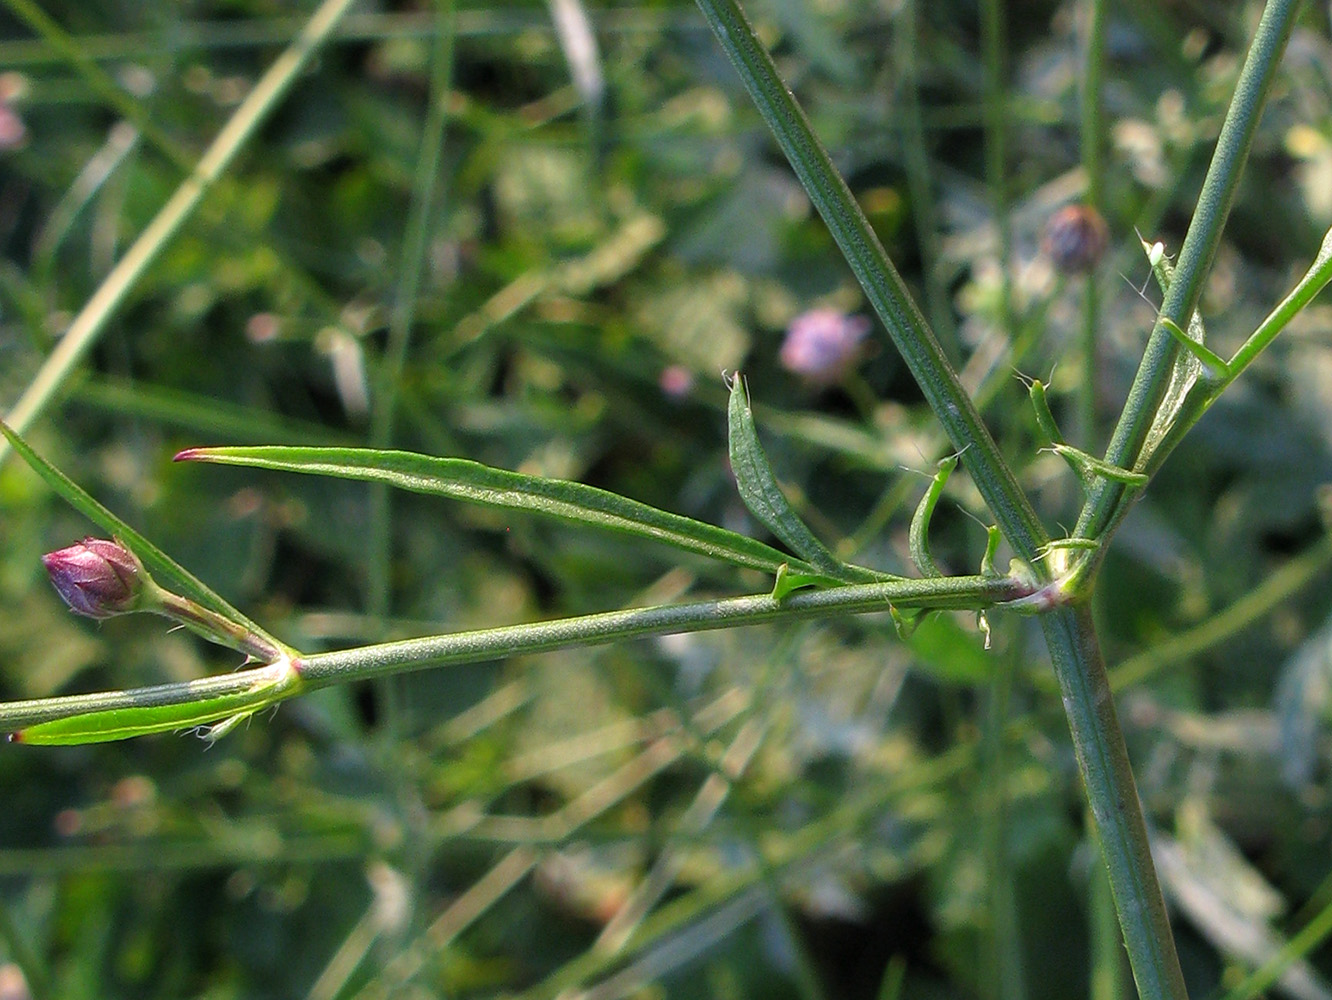 Image of Cephalaria transsylvanica specimen.